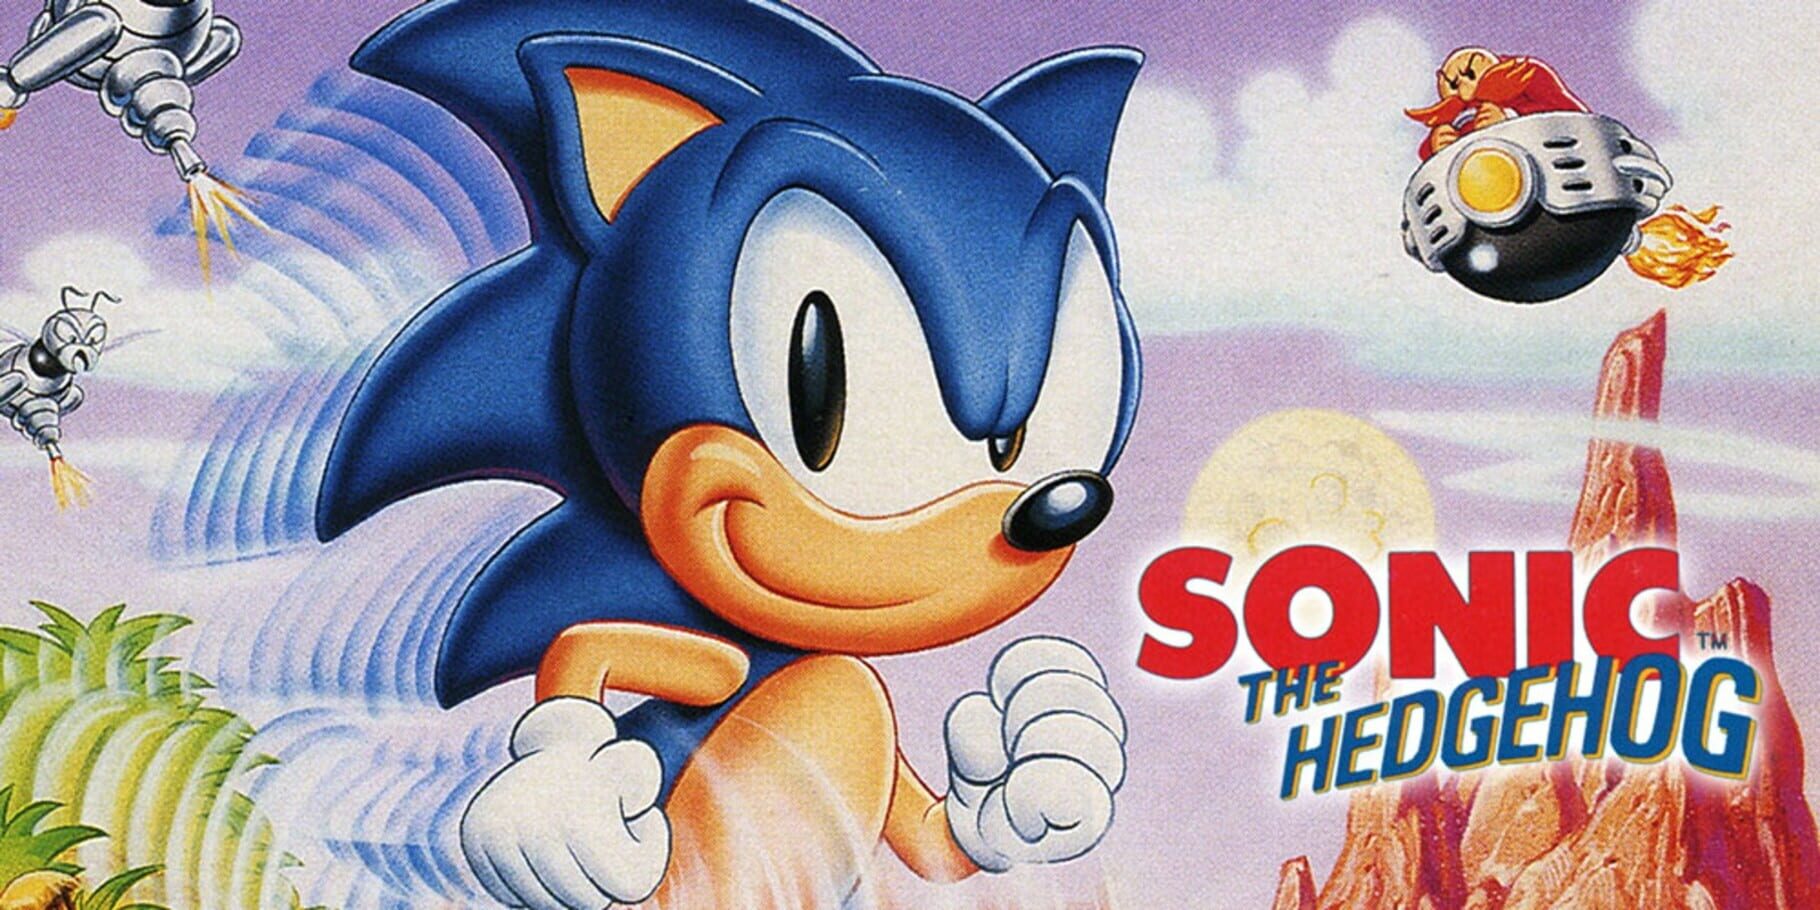 Arte - Sonic the Hedgehog